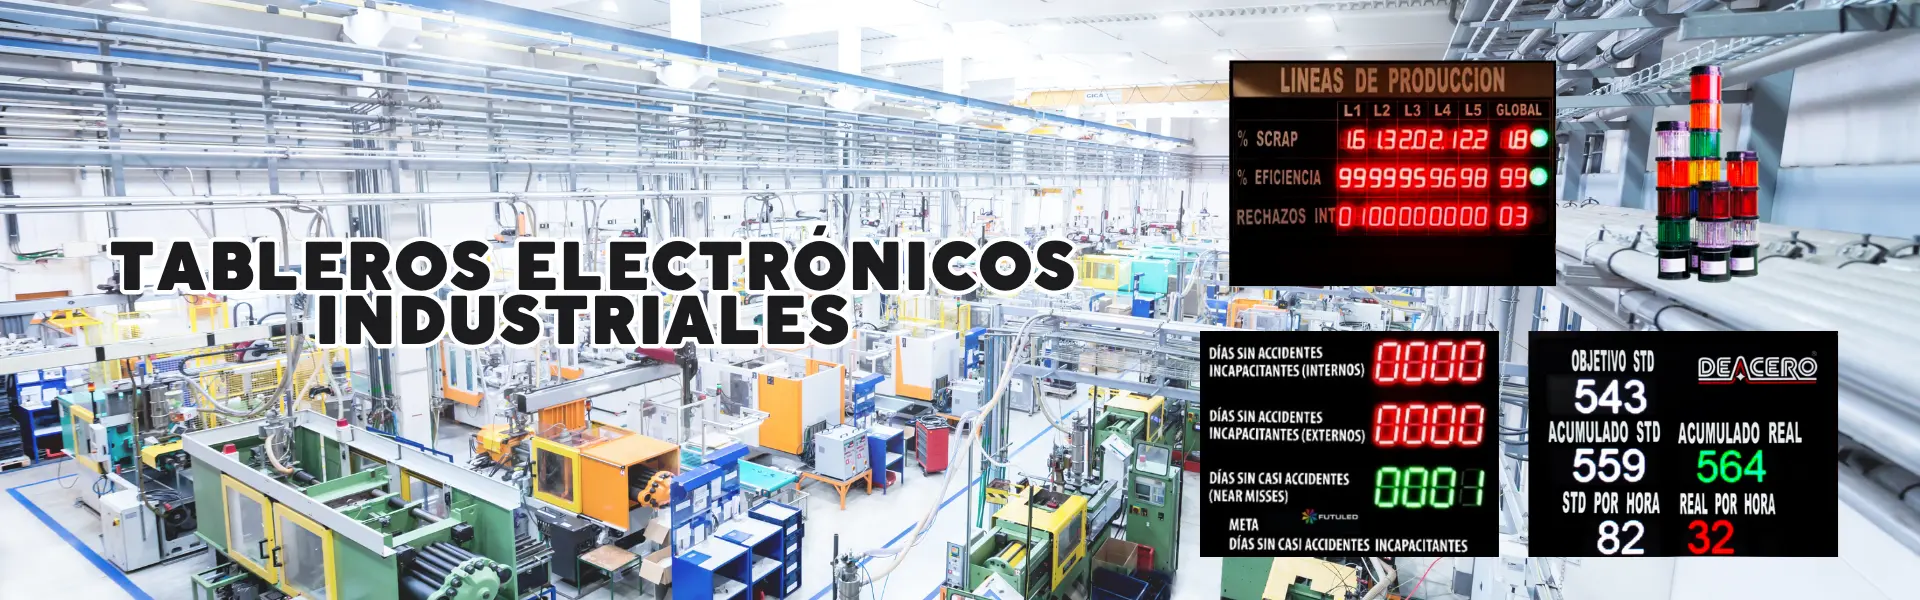 Tableros Electronicos Industriales